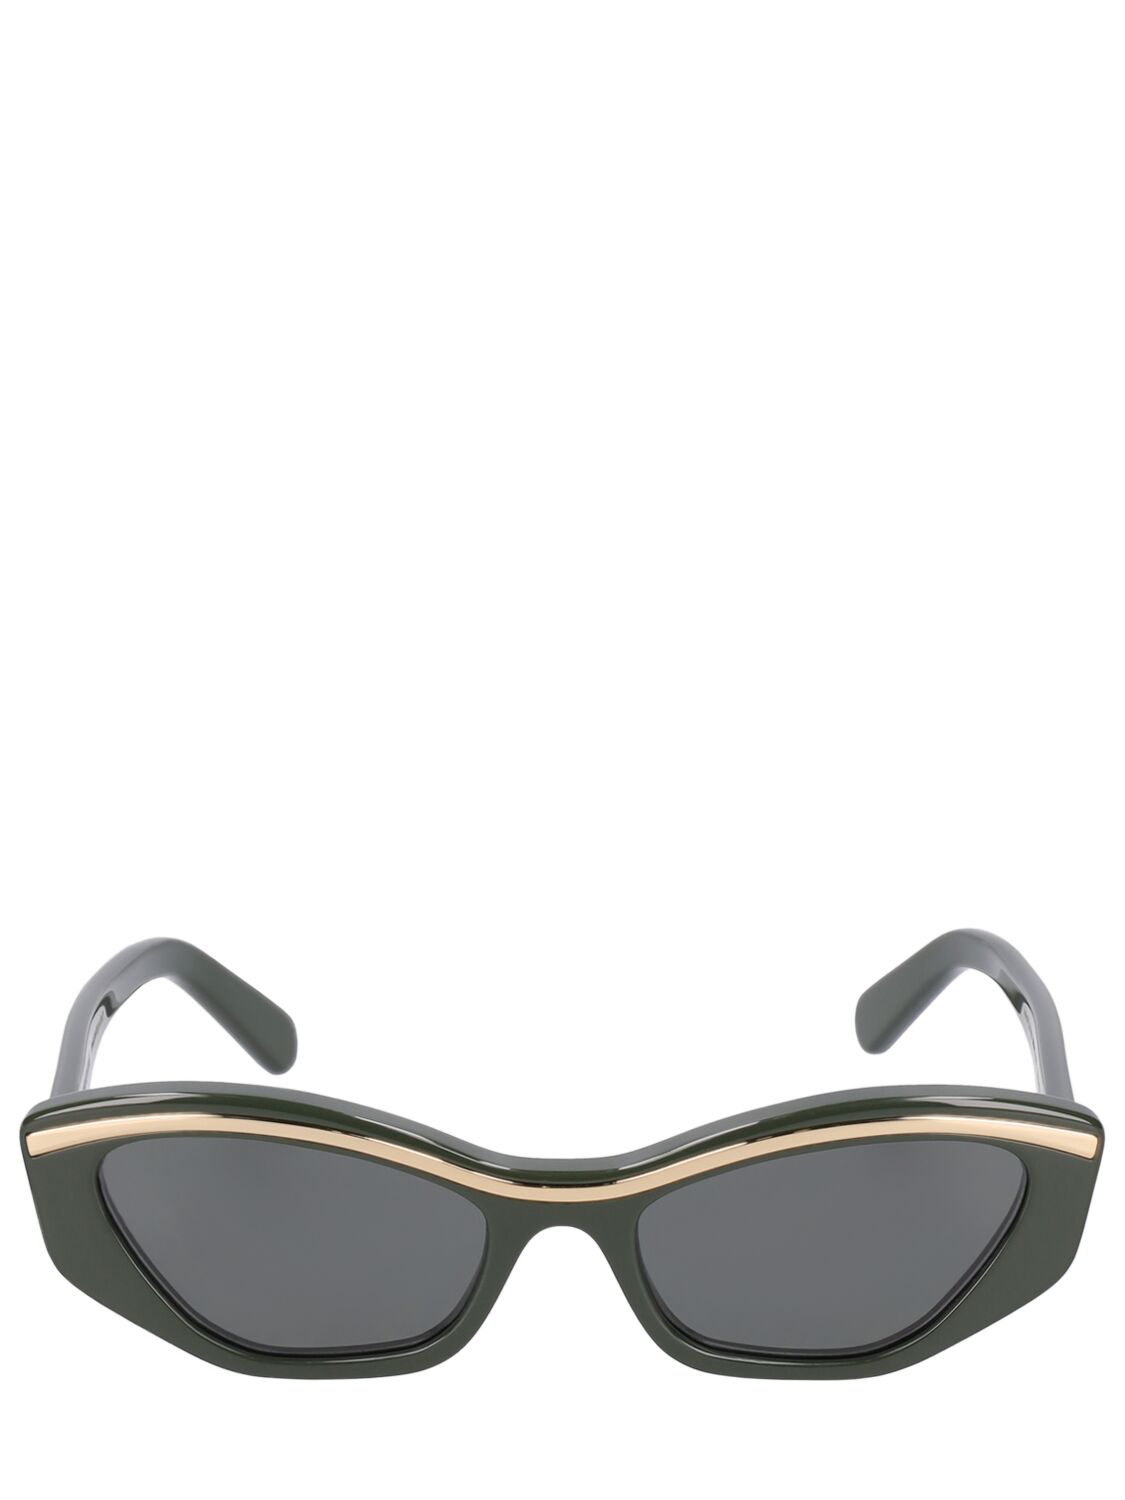 Image of Lyrical Cat-eye Acetate Sunglasses